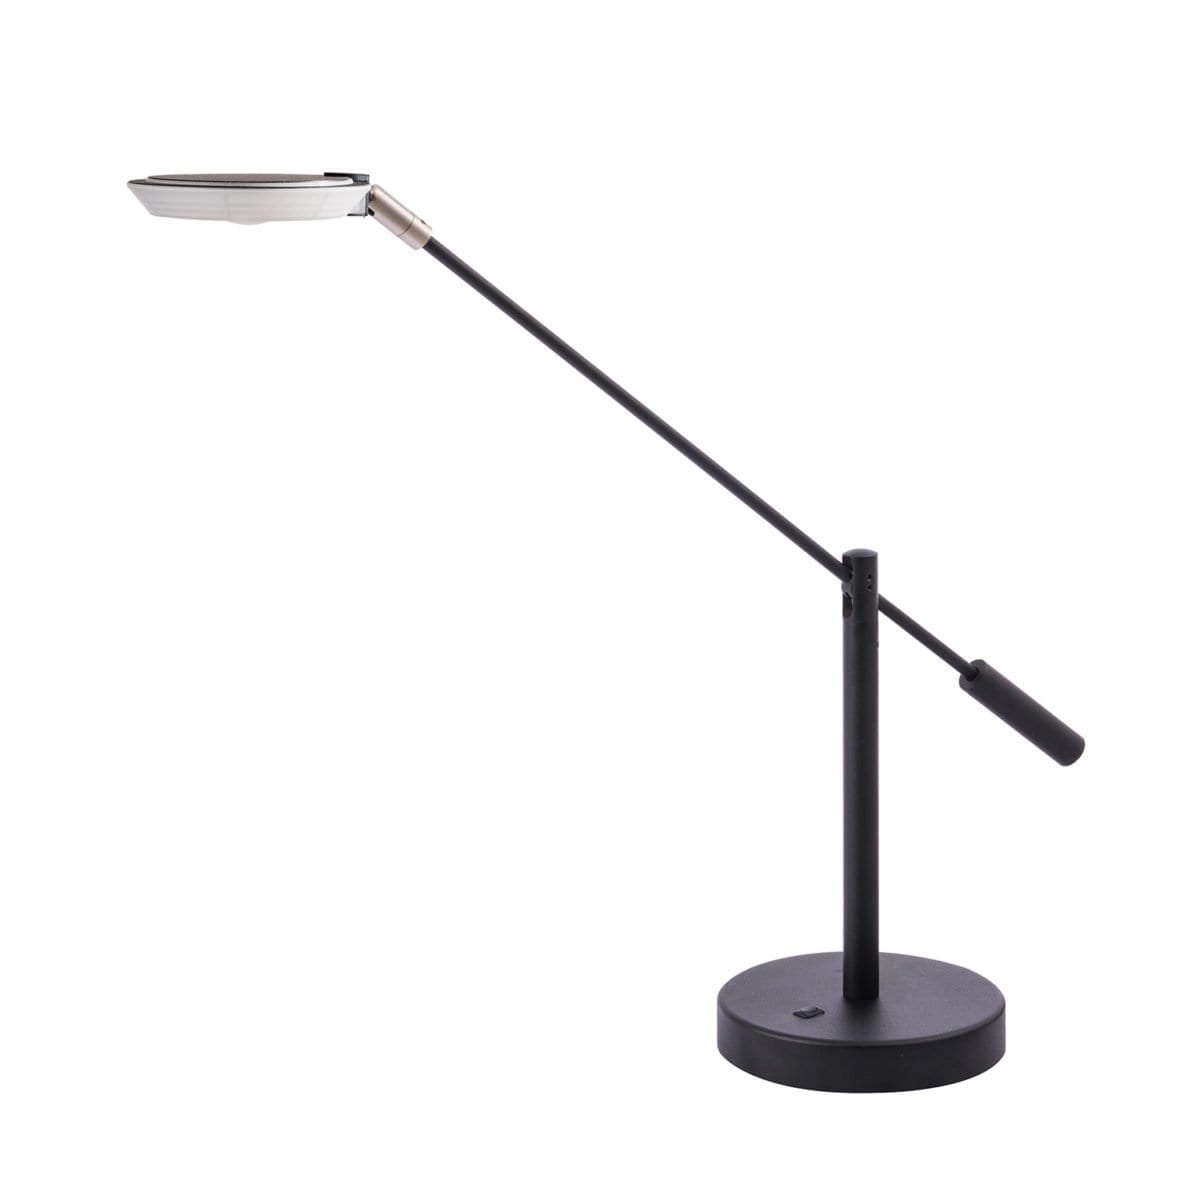 148 PTL 5021 BLK
LED Table Lamp in Black or
Satin Nickle
Regular Price $214.99
Sale Price $149.99